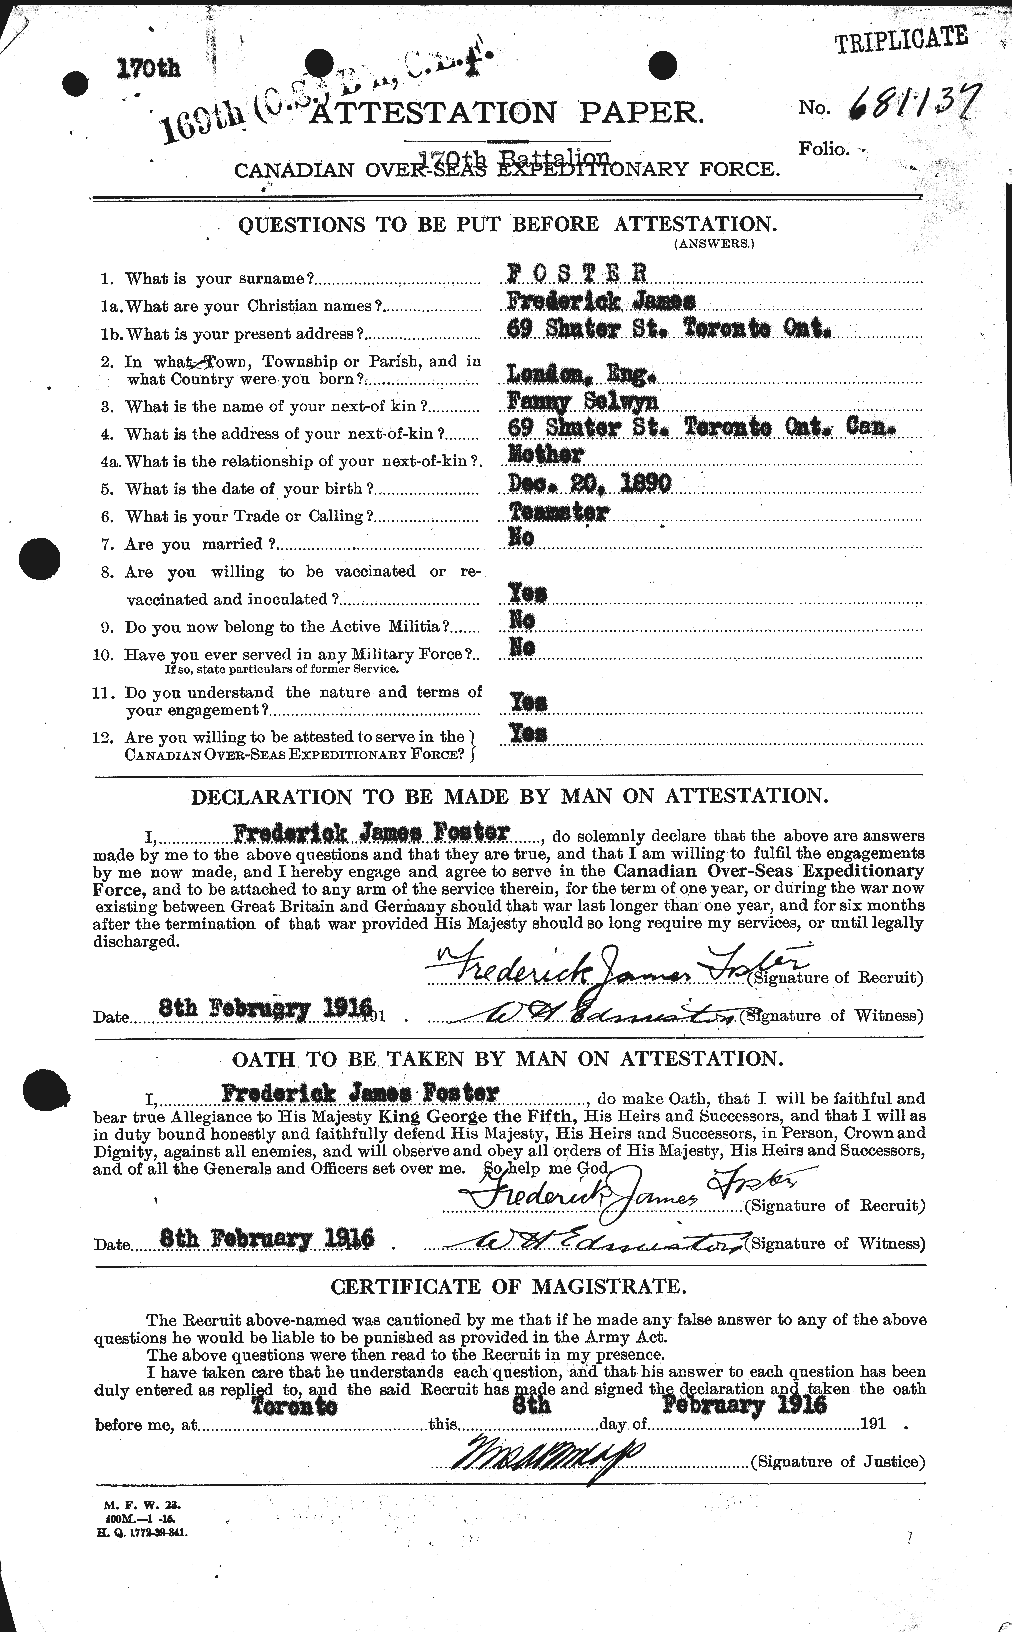 Dossiers du Personnel de la Première Guerre mondiale - CEC 330653a